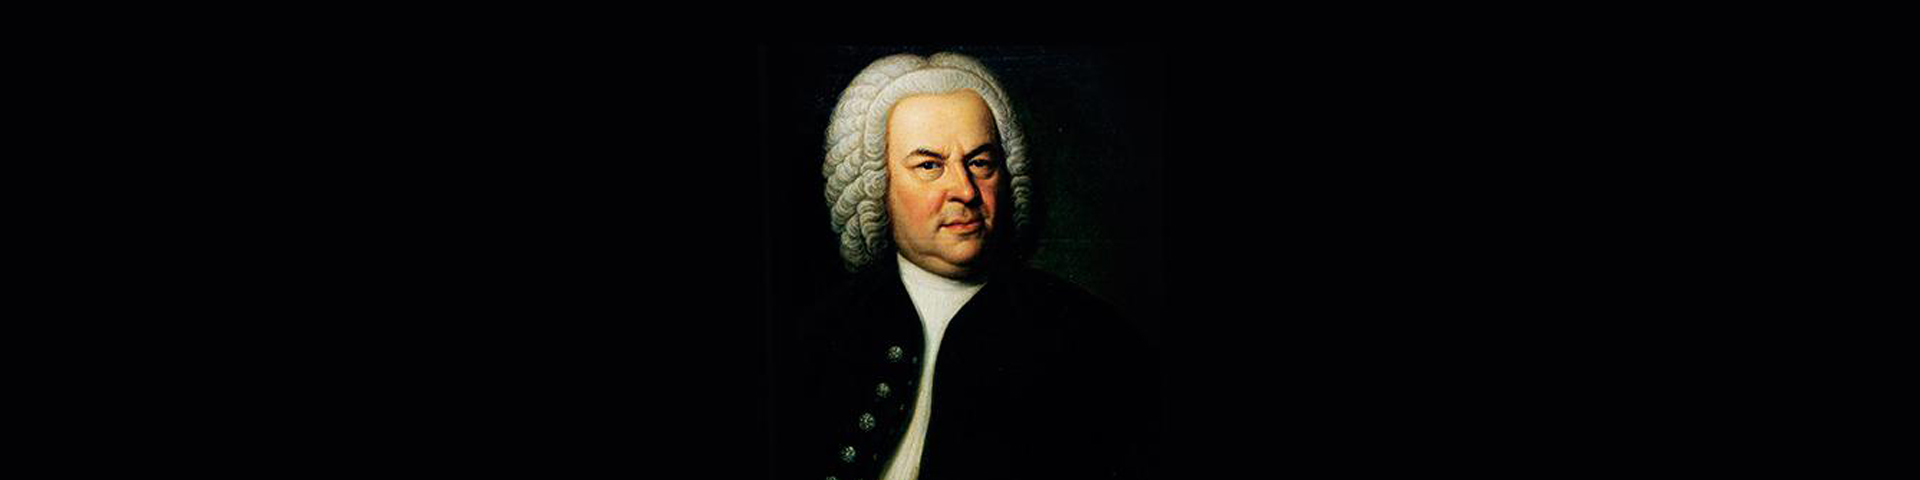 Motetten van Bach